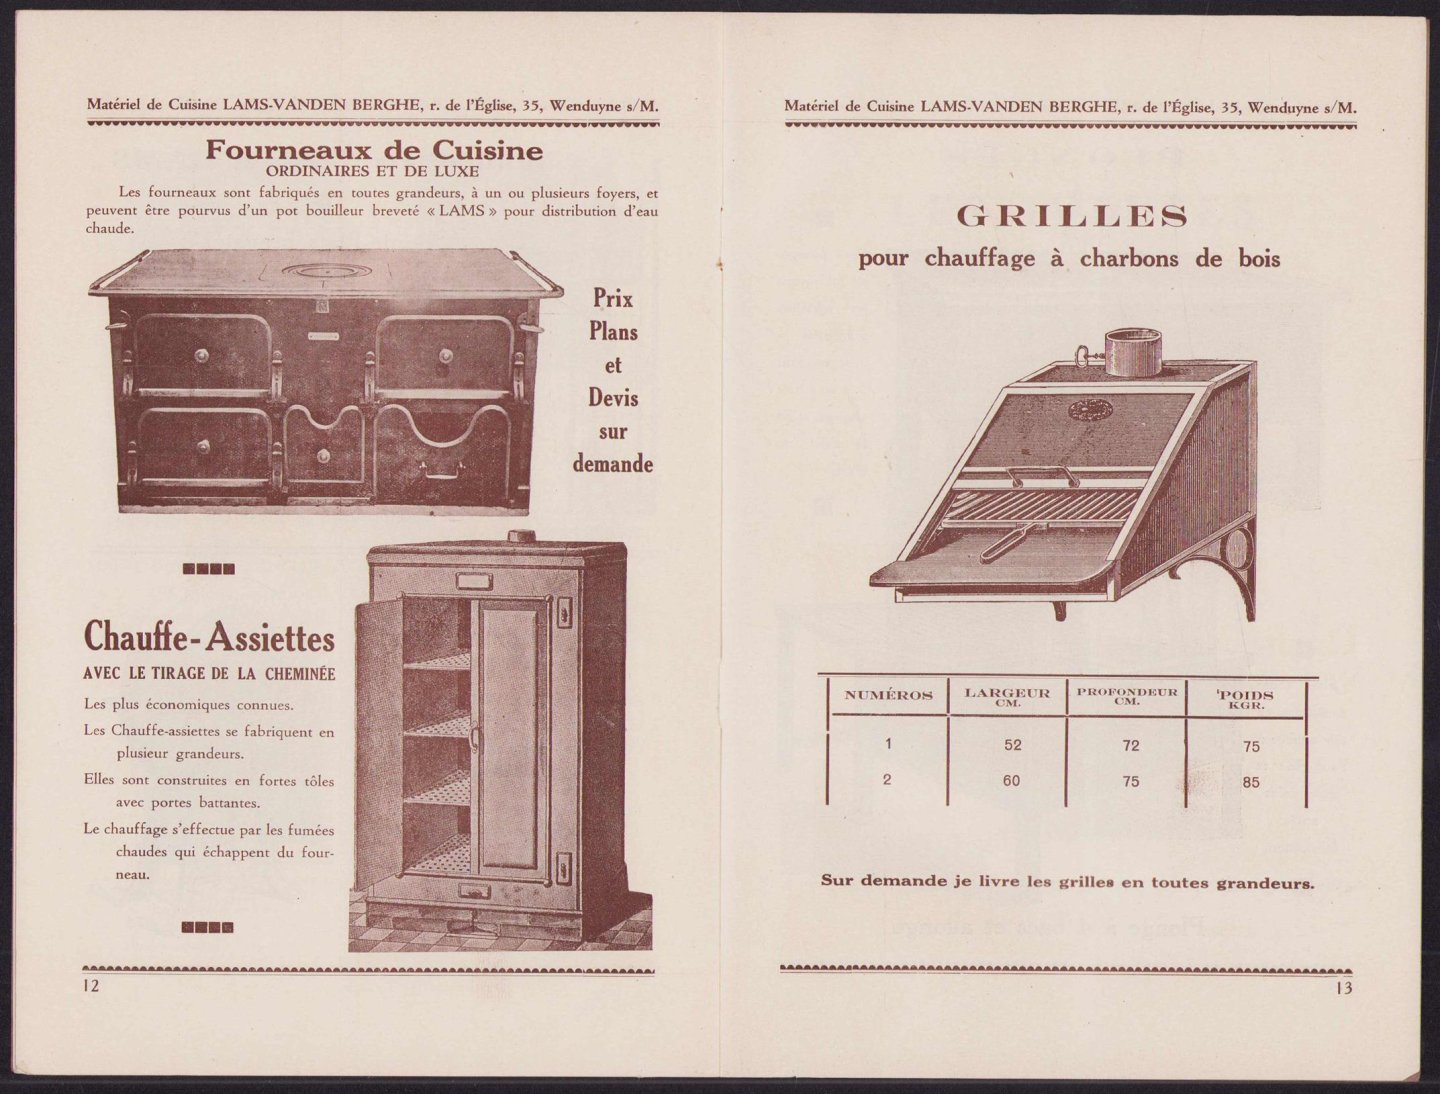 Groot keuken catalogus - Fabrication Belge de Machines et Materiel pour Cuisines Modernes CATALOGUE - Catalogus van keukens en groot keuken materiaal